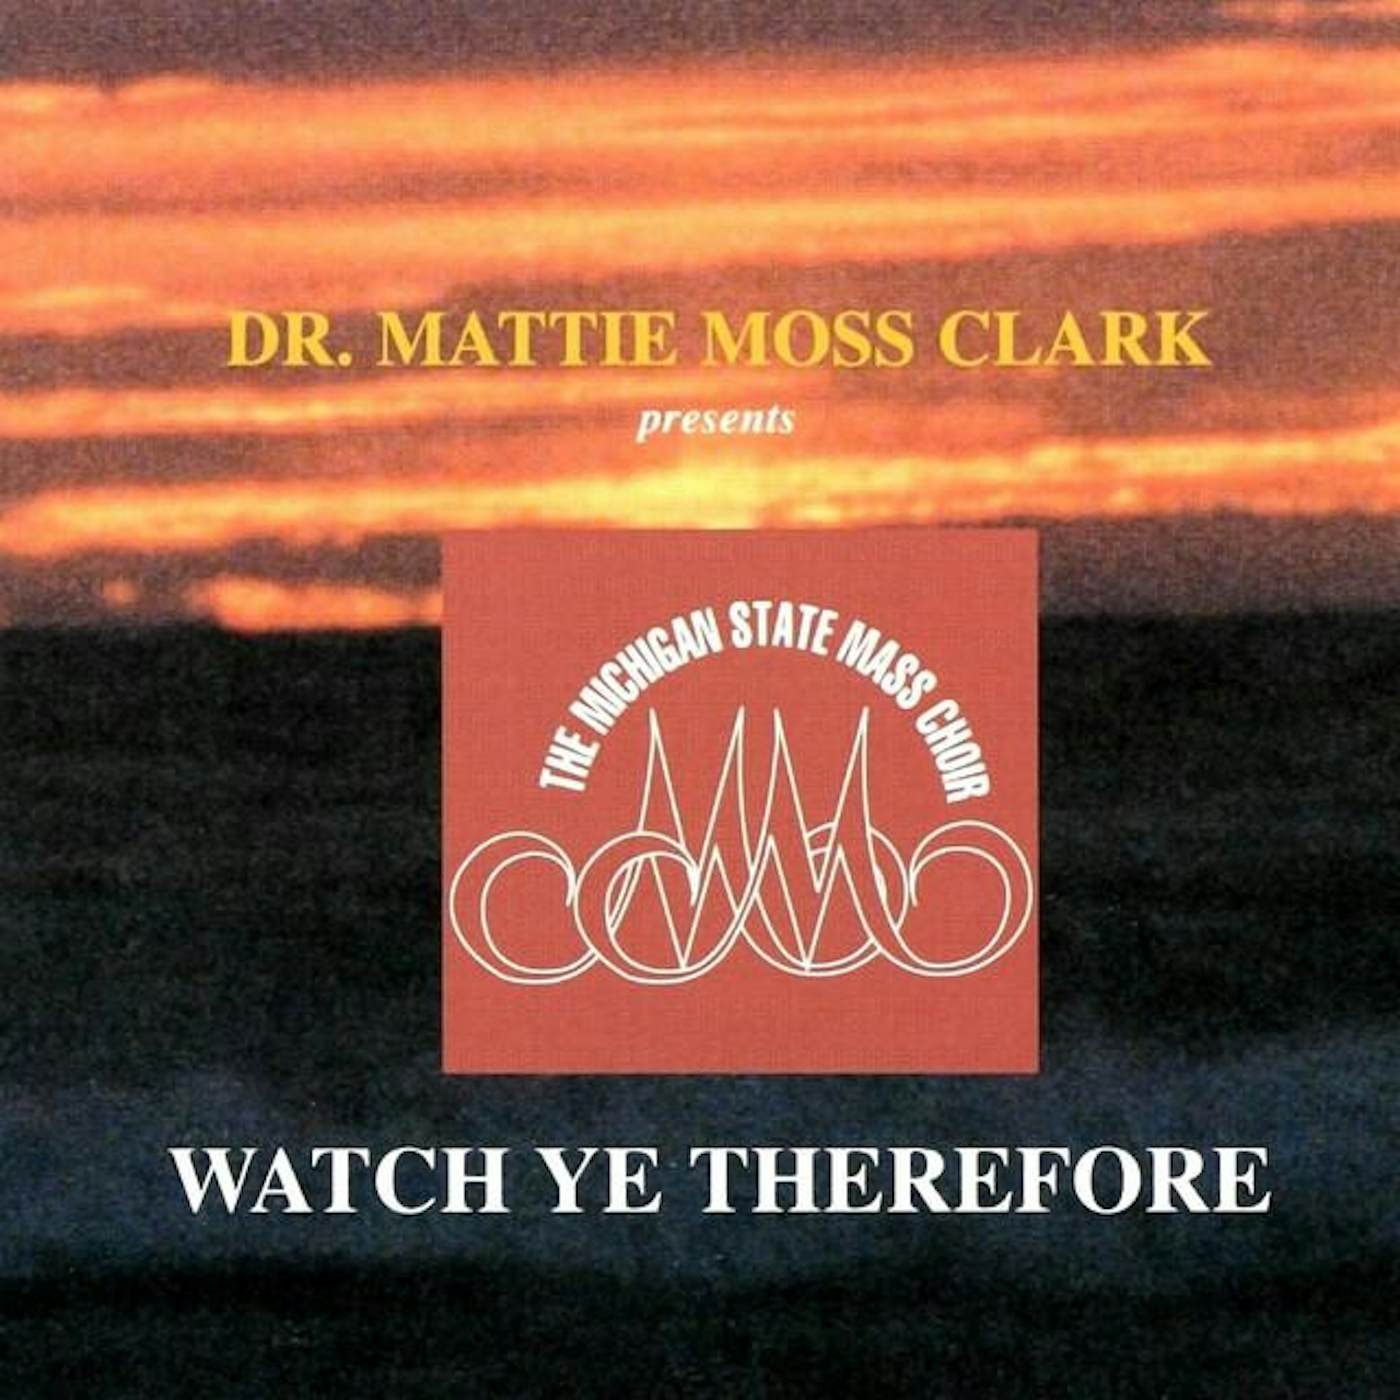 Dr. Mattie Moss Clark